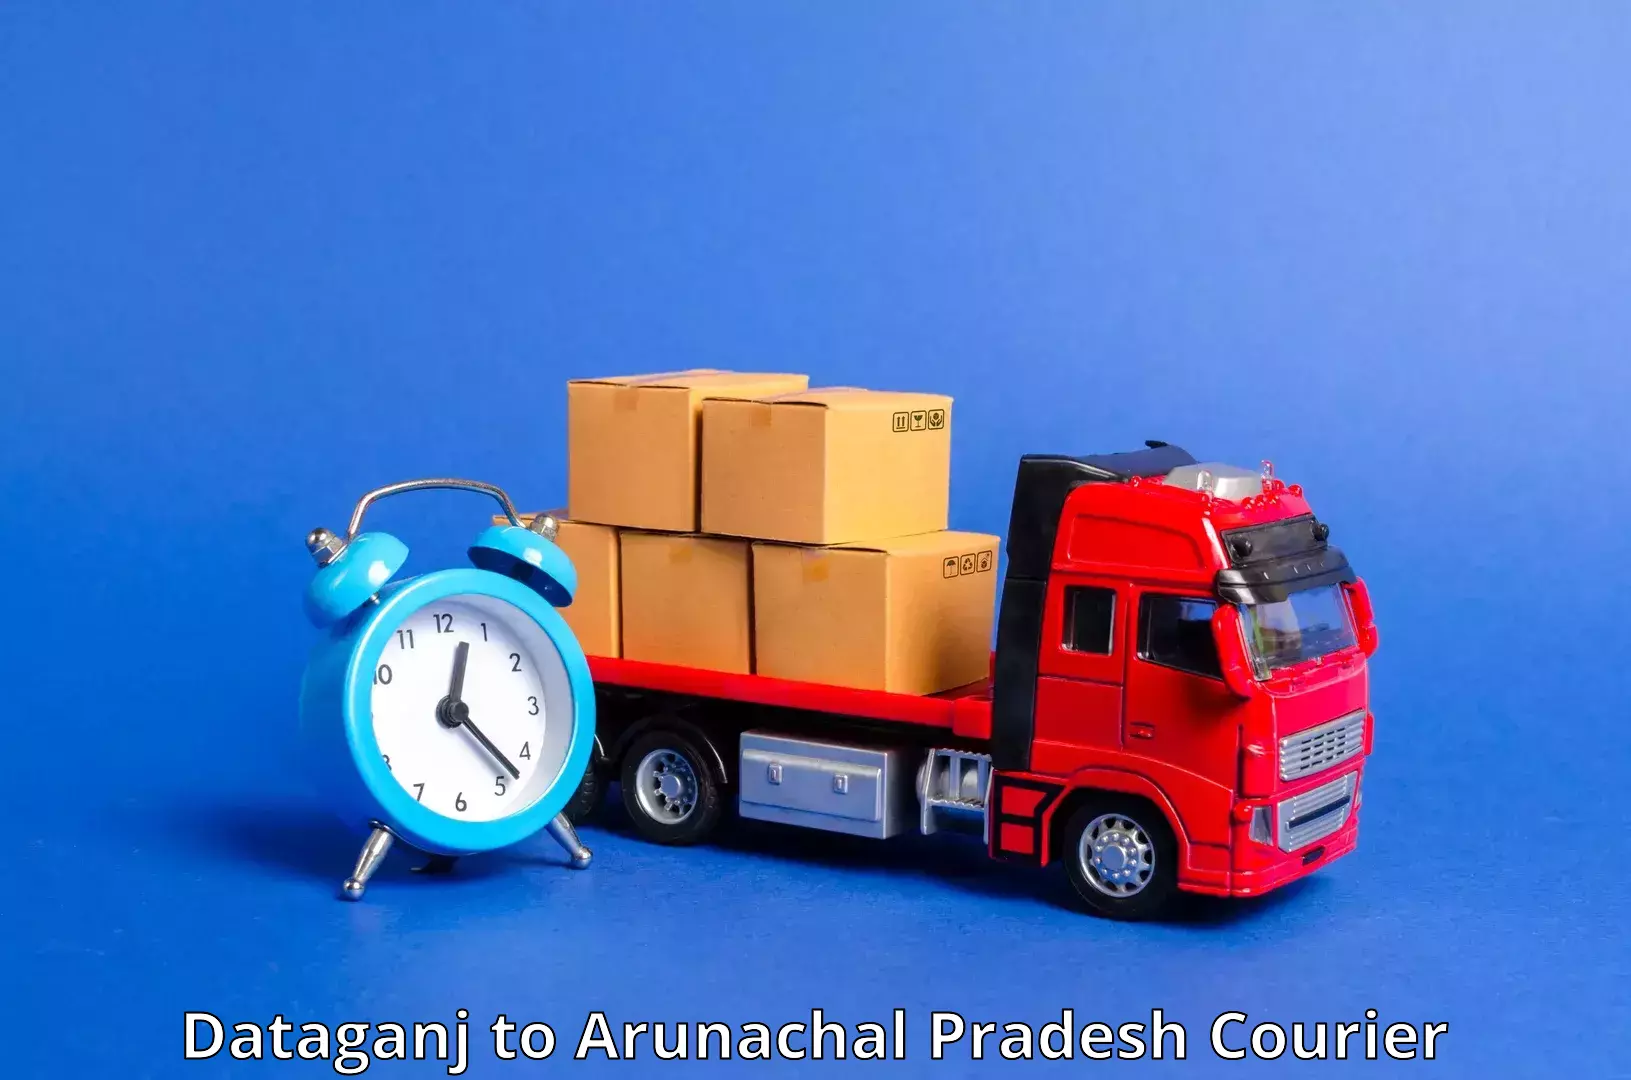 Package tracking Dataganj to Arunachal Pradesh